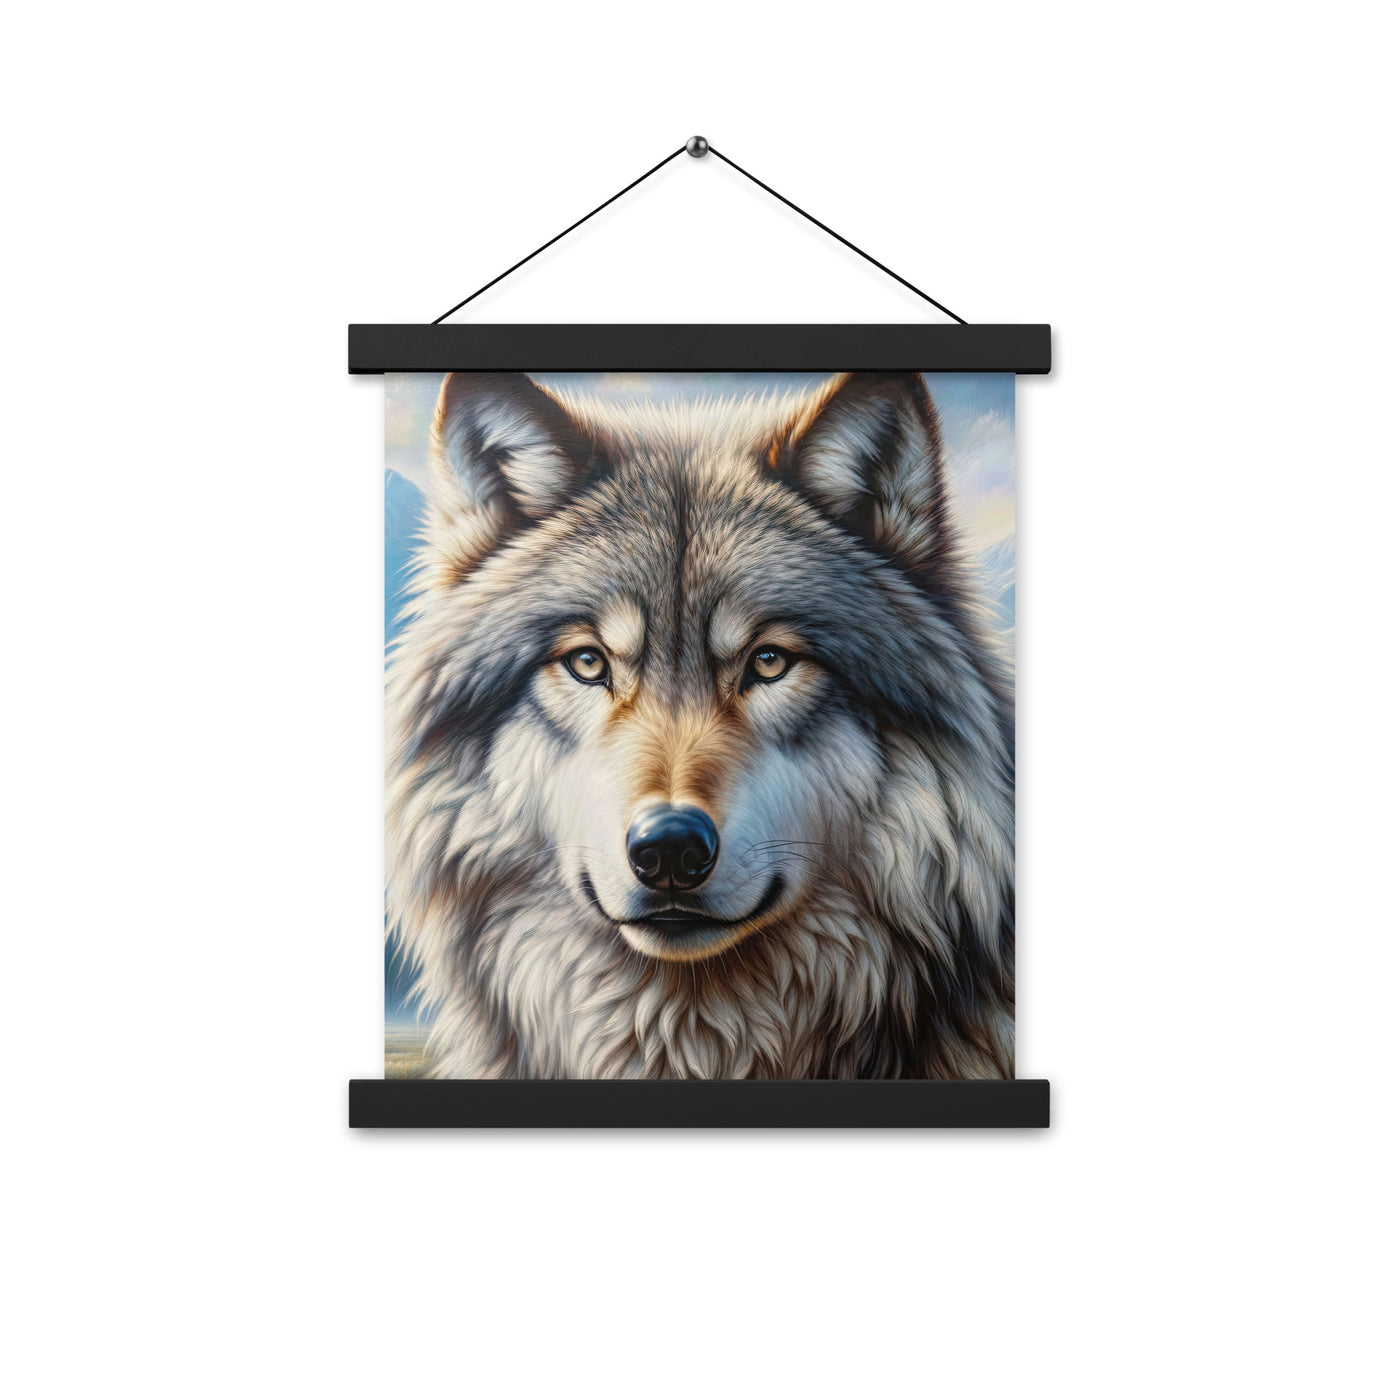 Porträt-Ölgemälde eines prächtigen Wolfes mit faszinierenden Augen (AN) - Premium Poster mit Aufhängung xxx yyy zzz 27.9 x 35.6 cm